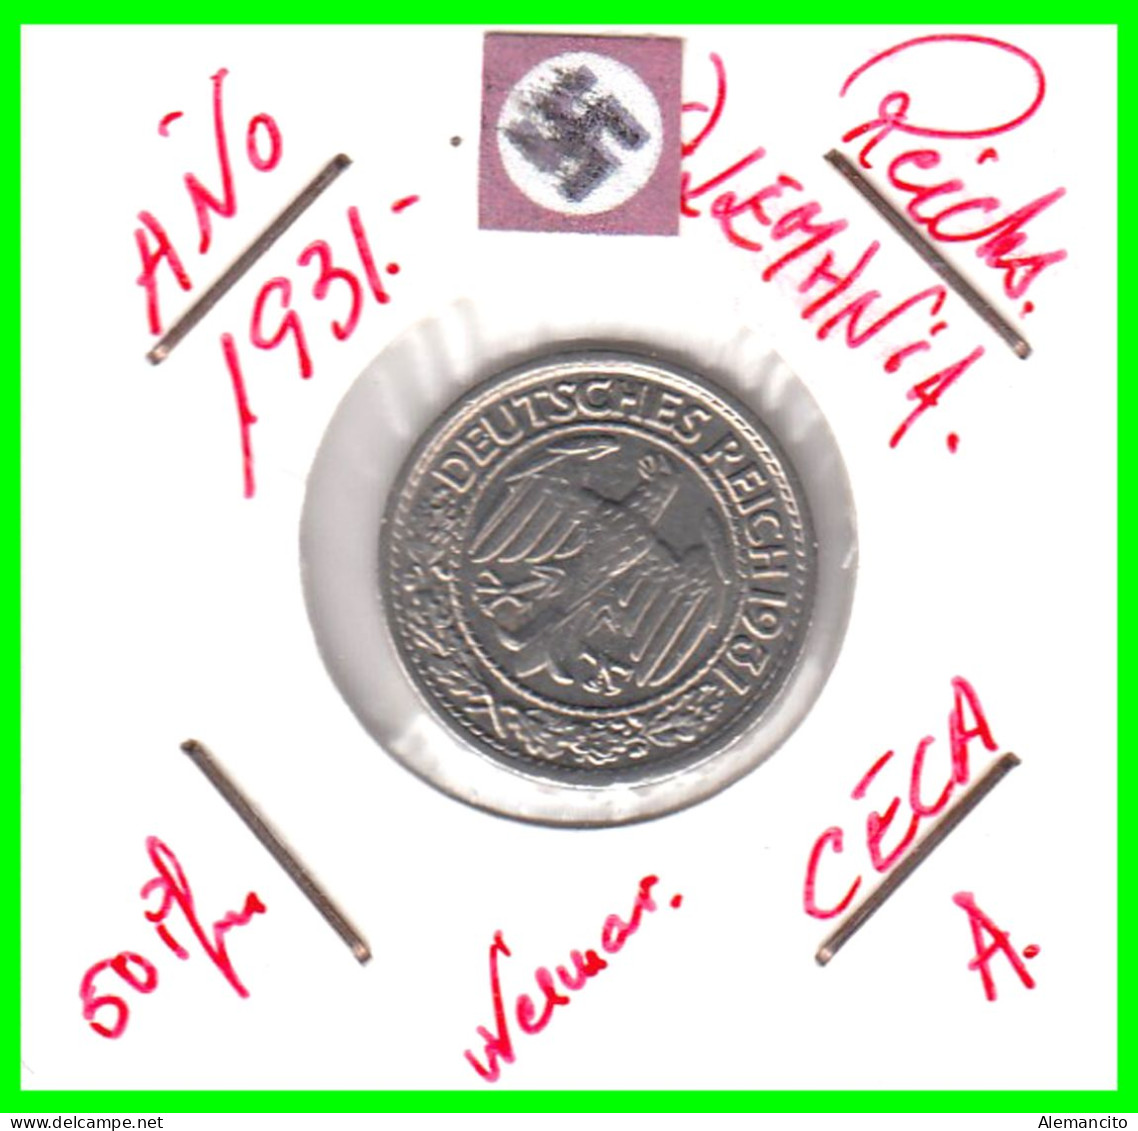 GERMANY REPÚBLICA DE WEIMAR 50 REICHSPFENNIG ( 1931 CECA - A )  (REICHSPFENNIG KM # 40 - 50 Rentenpfennig & 50 Reichspfennig